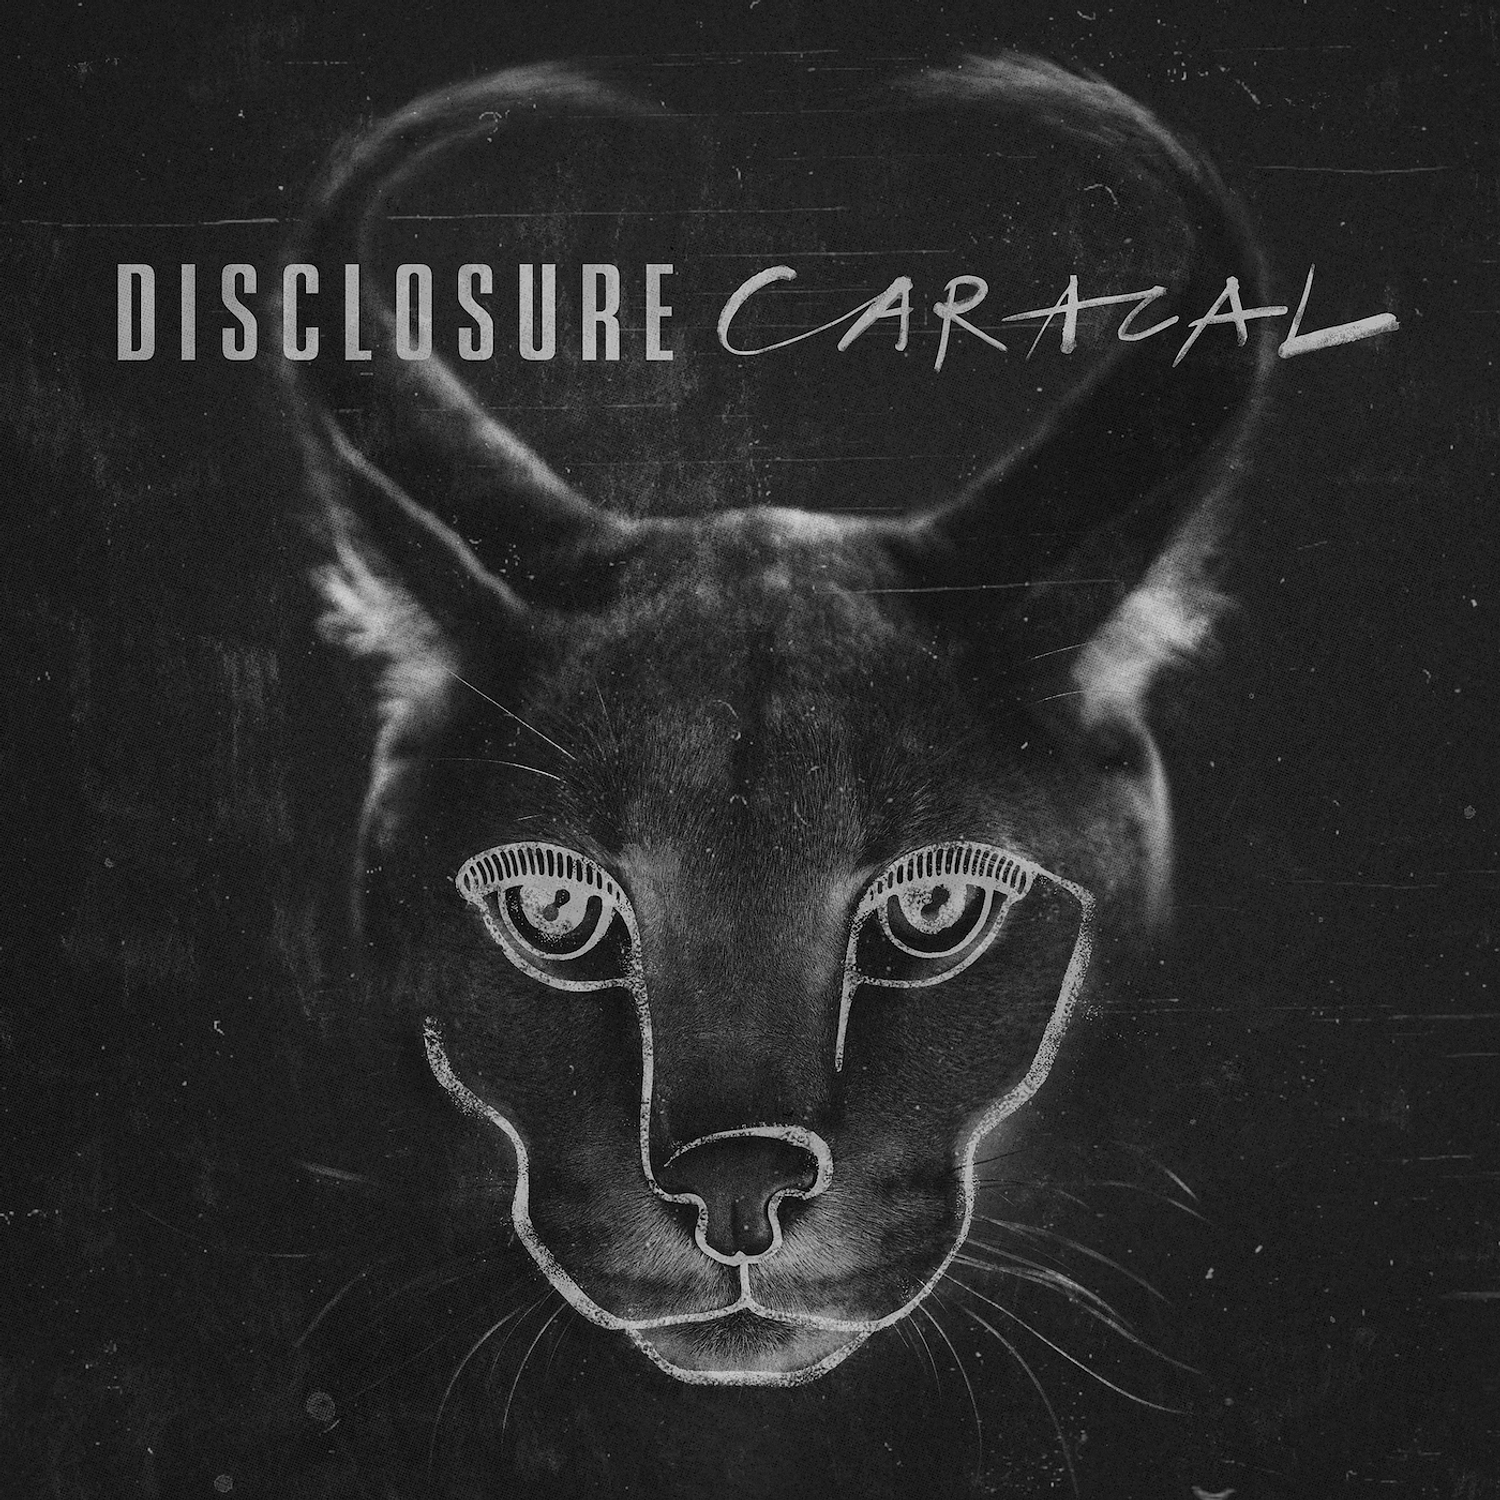 Disclosure confirm new album, ‘Caracal’